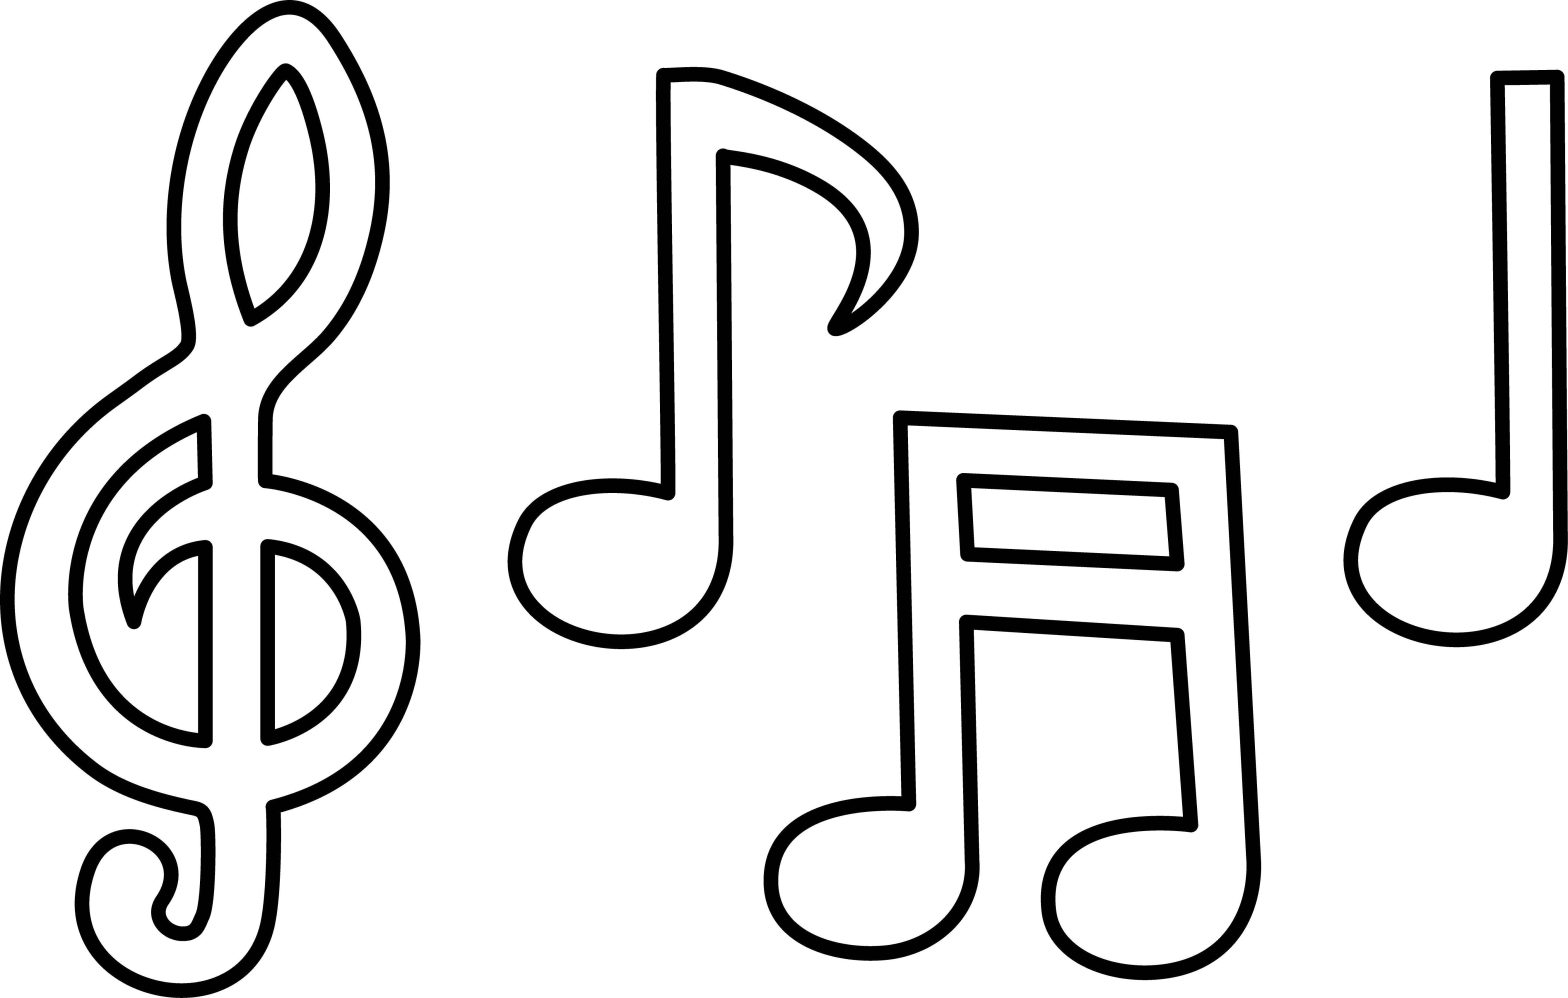 Раскраска с изображением скрипичного ключа и нот (ноты)